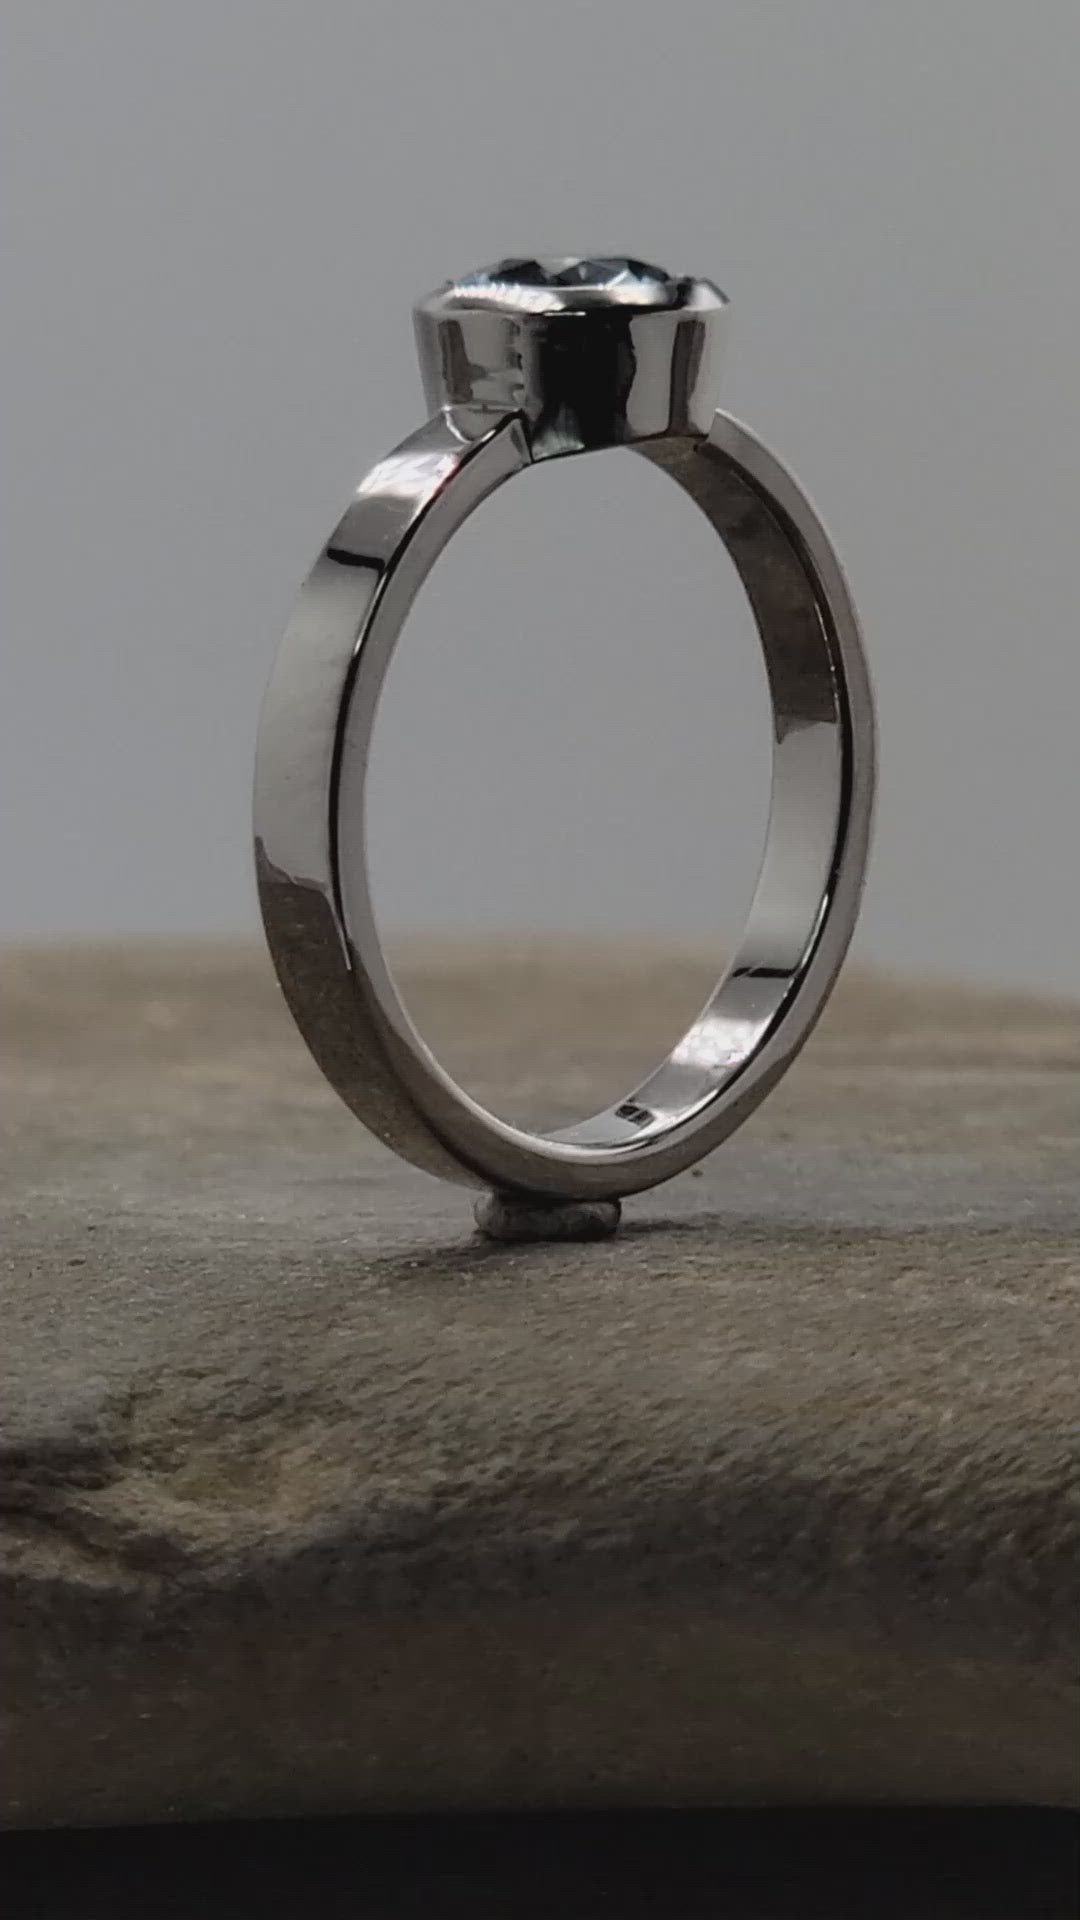 Aquamarine Platinum Wedding Set - Hand Cut Aquamarine - Aquamarine Engagement Ring - Platinum Wedding Ring